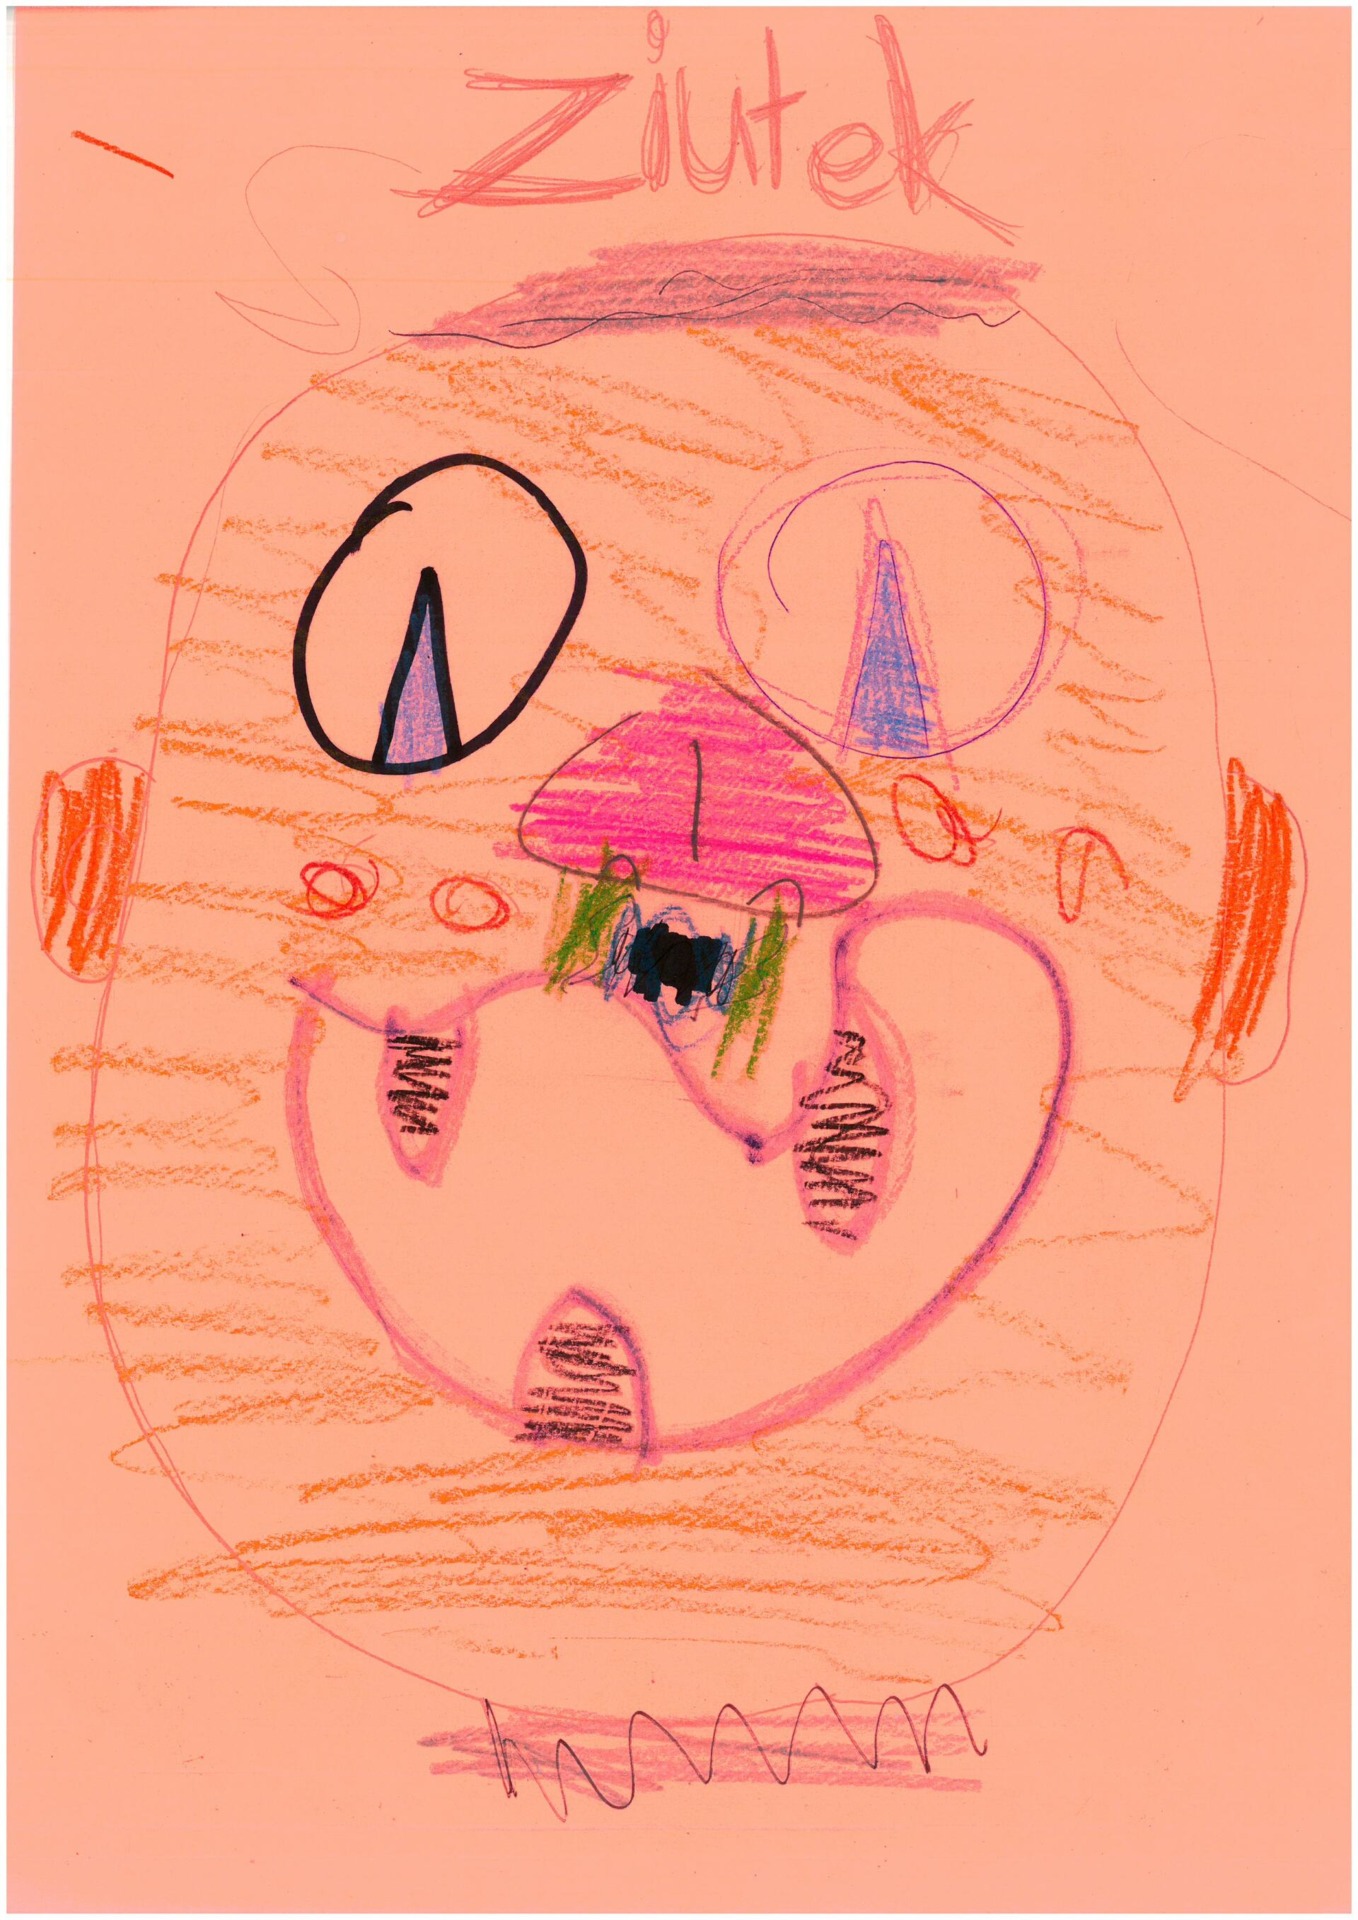 Portret, na którym widać twarz ze źrenicami w kształcie trójkątów, rozdziawiona buzia w uśmiechu uwydatnia trzy czarne zęby, na środku twarzy duży różowy nos